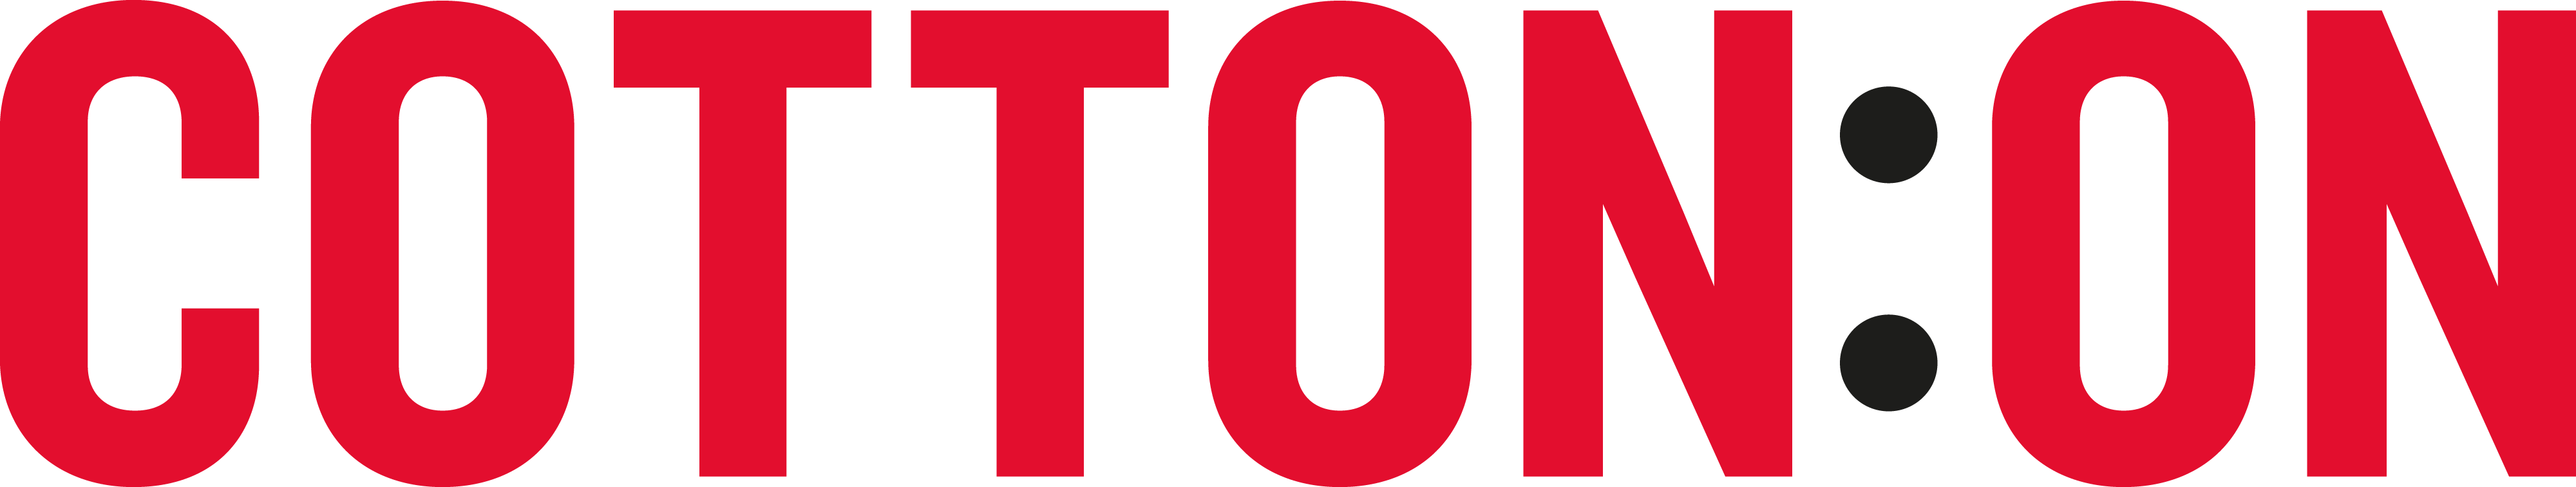 cotton on logo